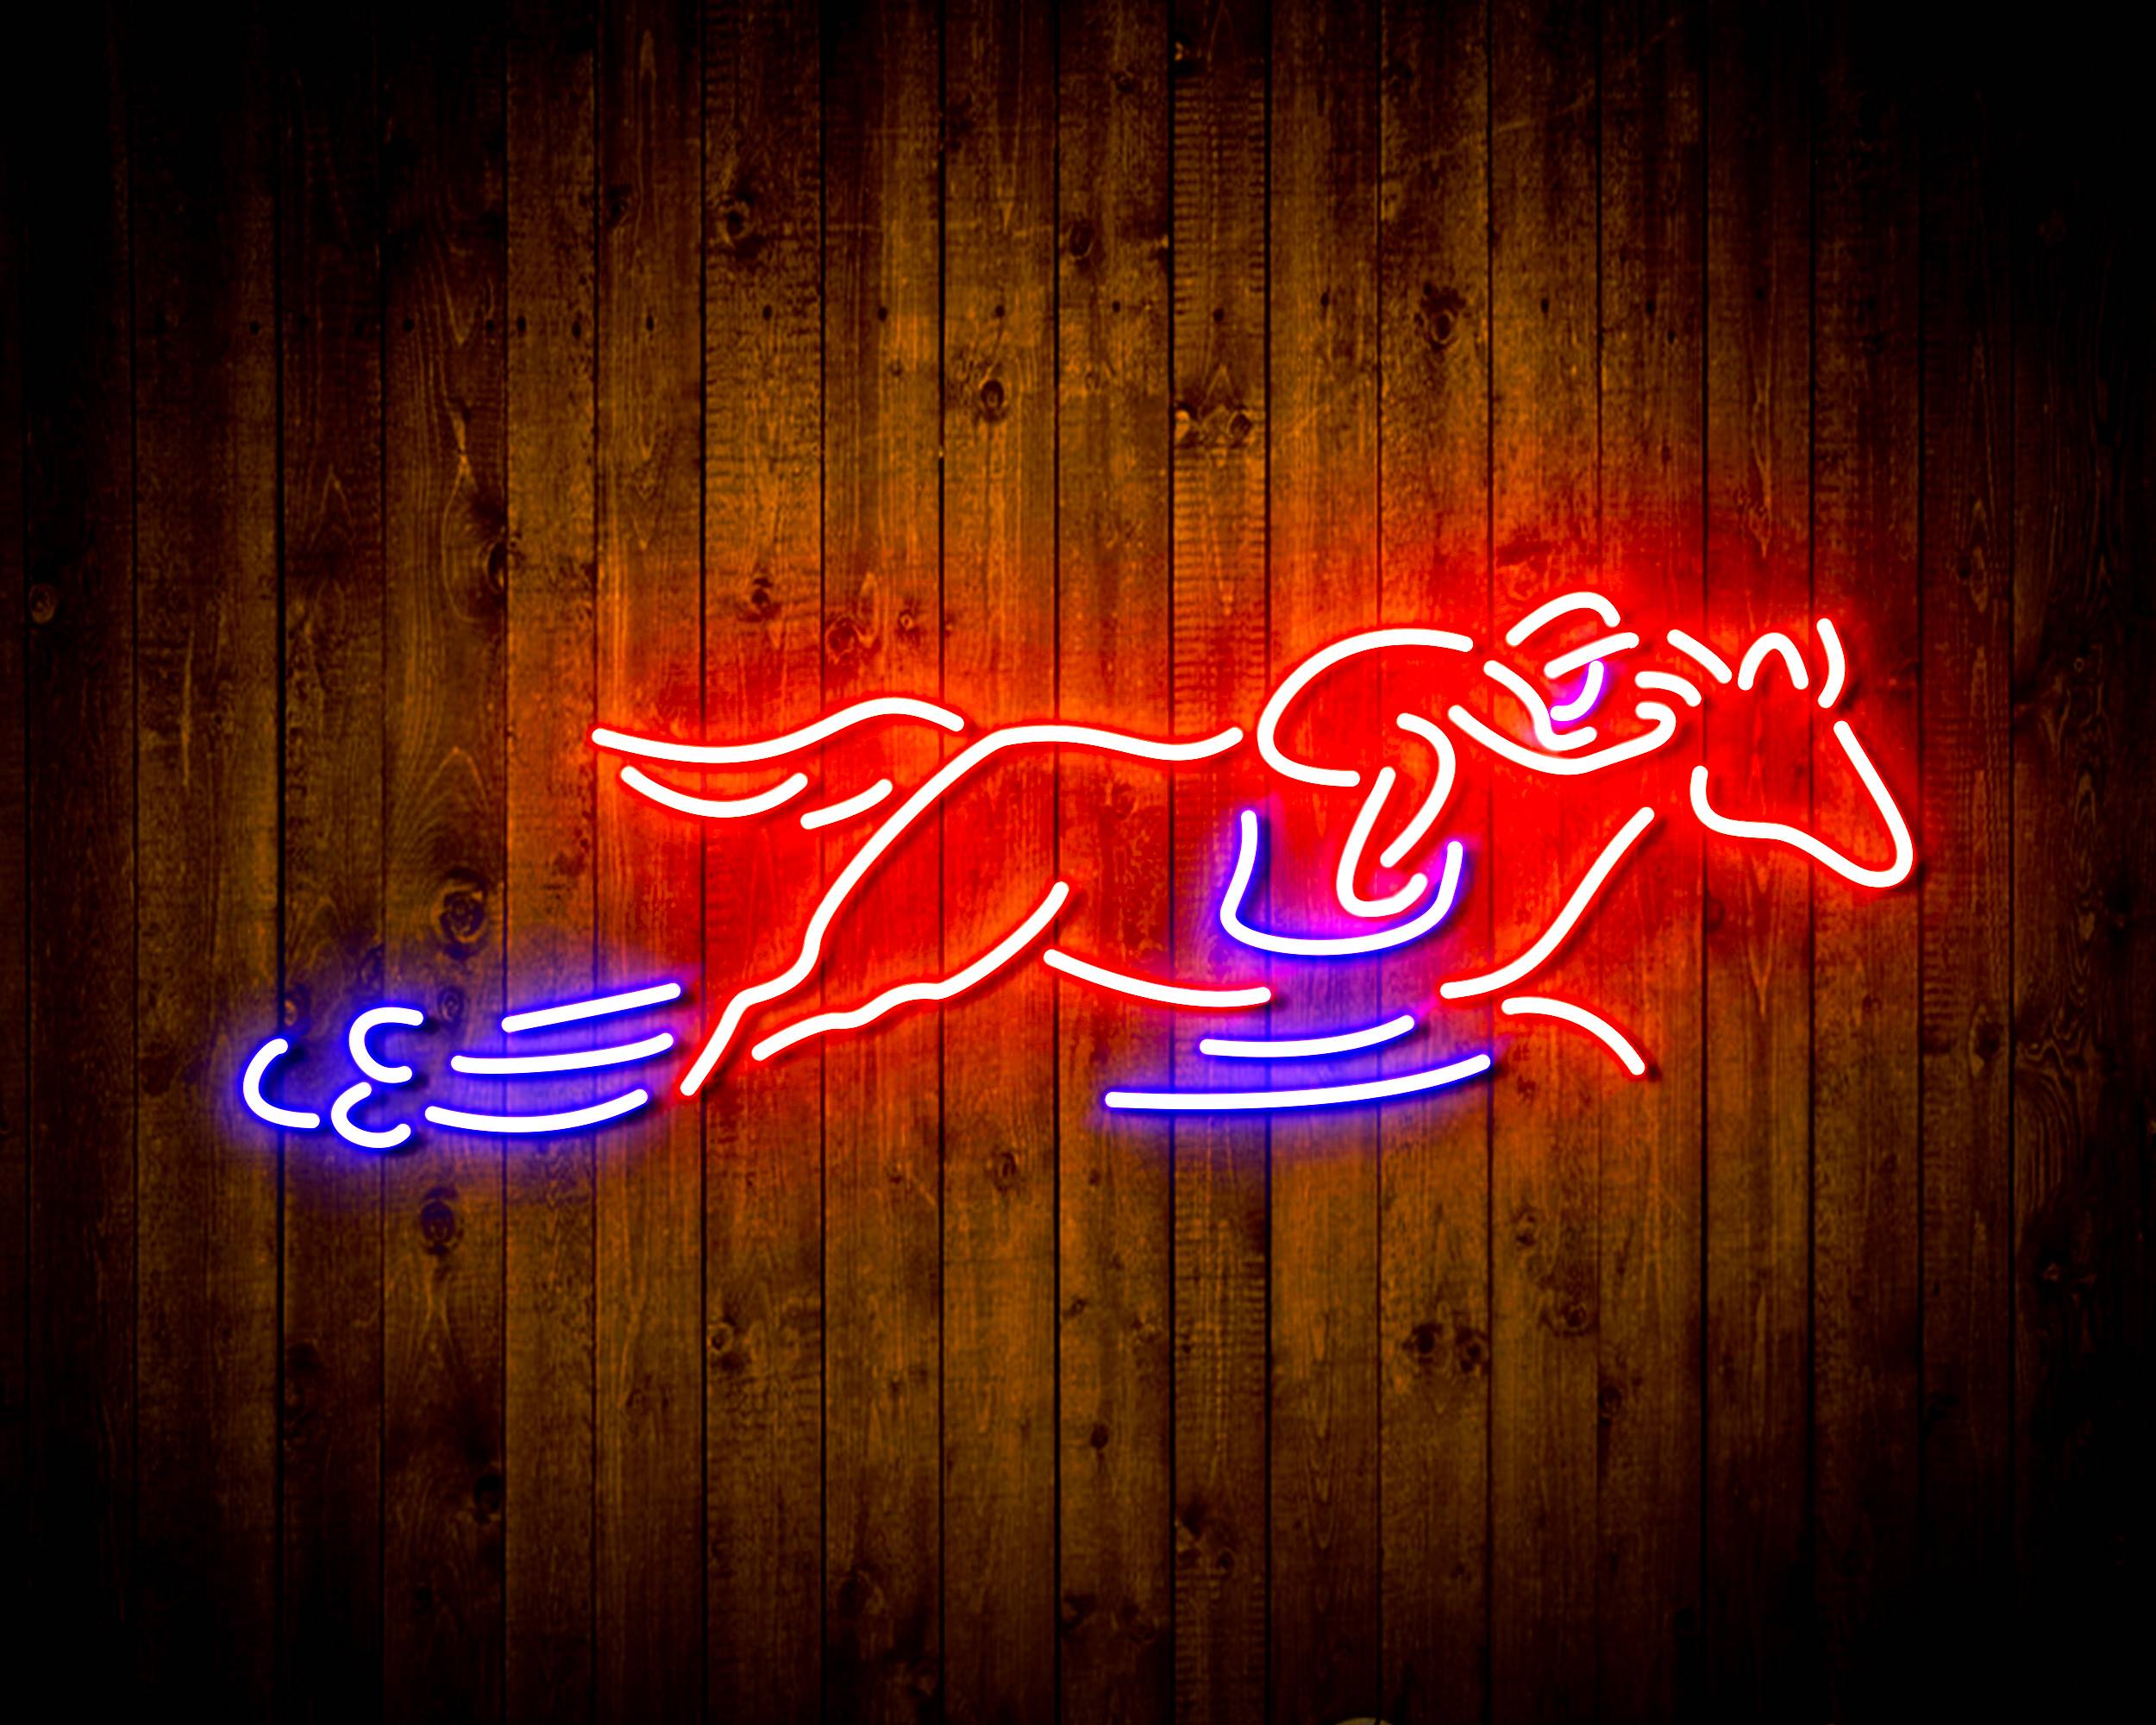 Running Horse for Budlight Handmade Neon Flex LED Sign